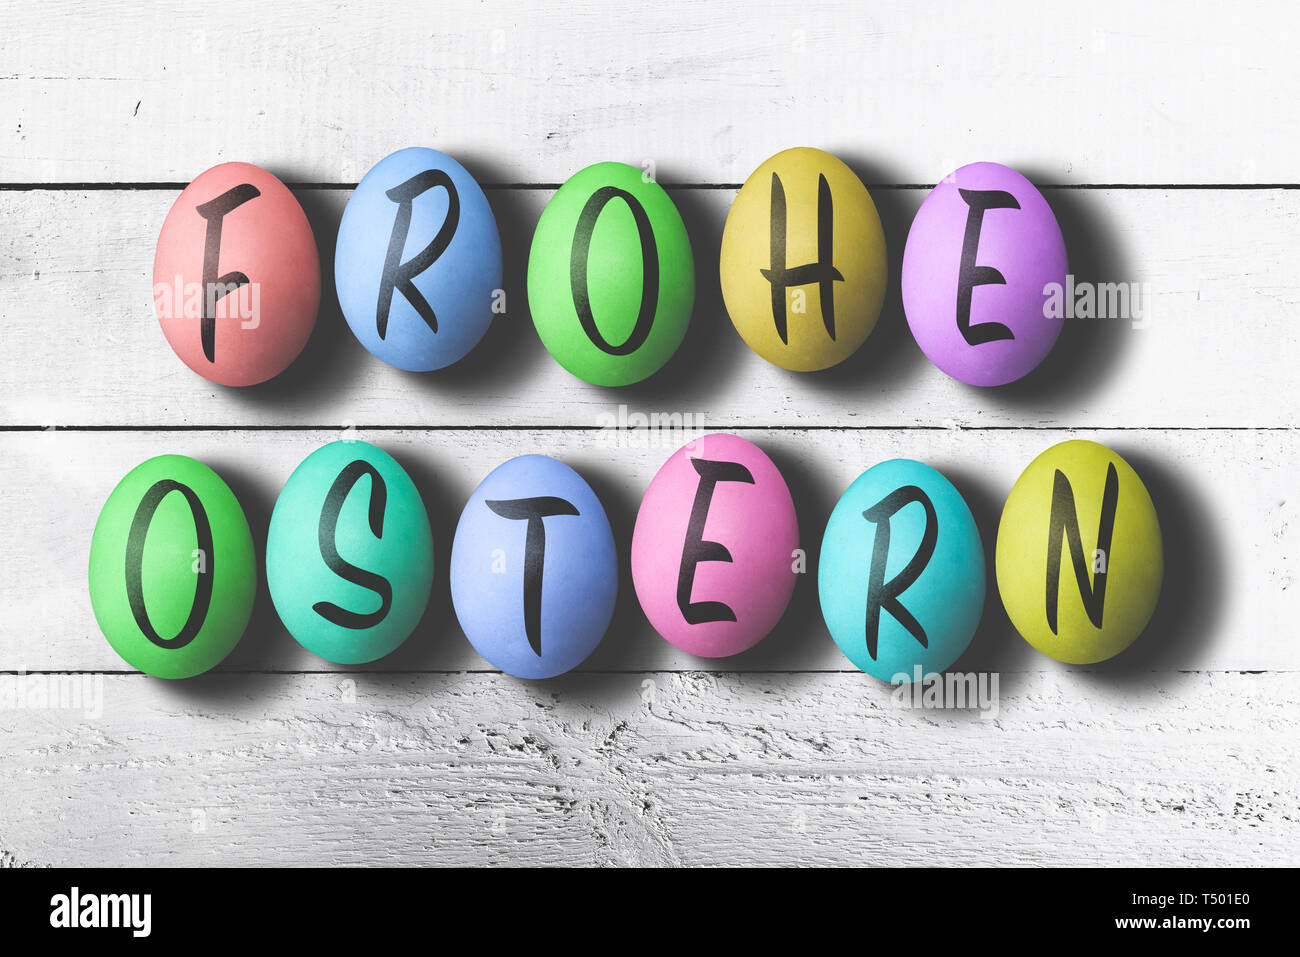 FROHE OSTERN, Tedesco per la felice Pasqua, scritta su colorate uova di pasqua contro bianco rustico tavolo in legno Foto Stock